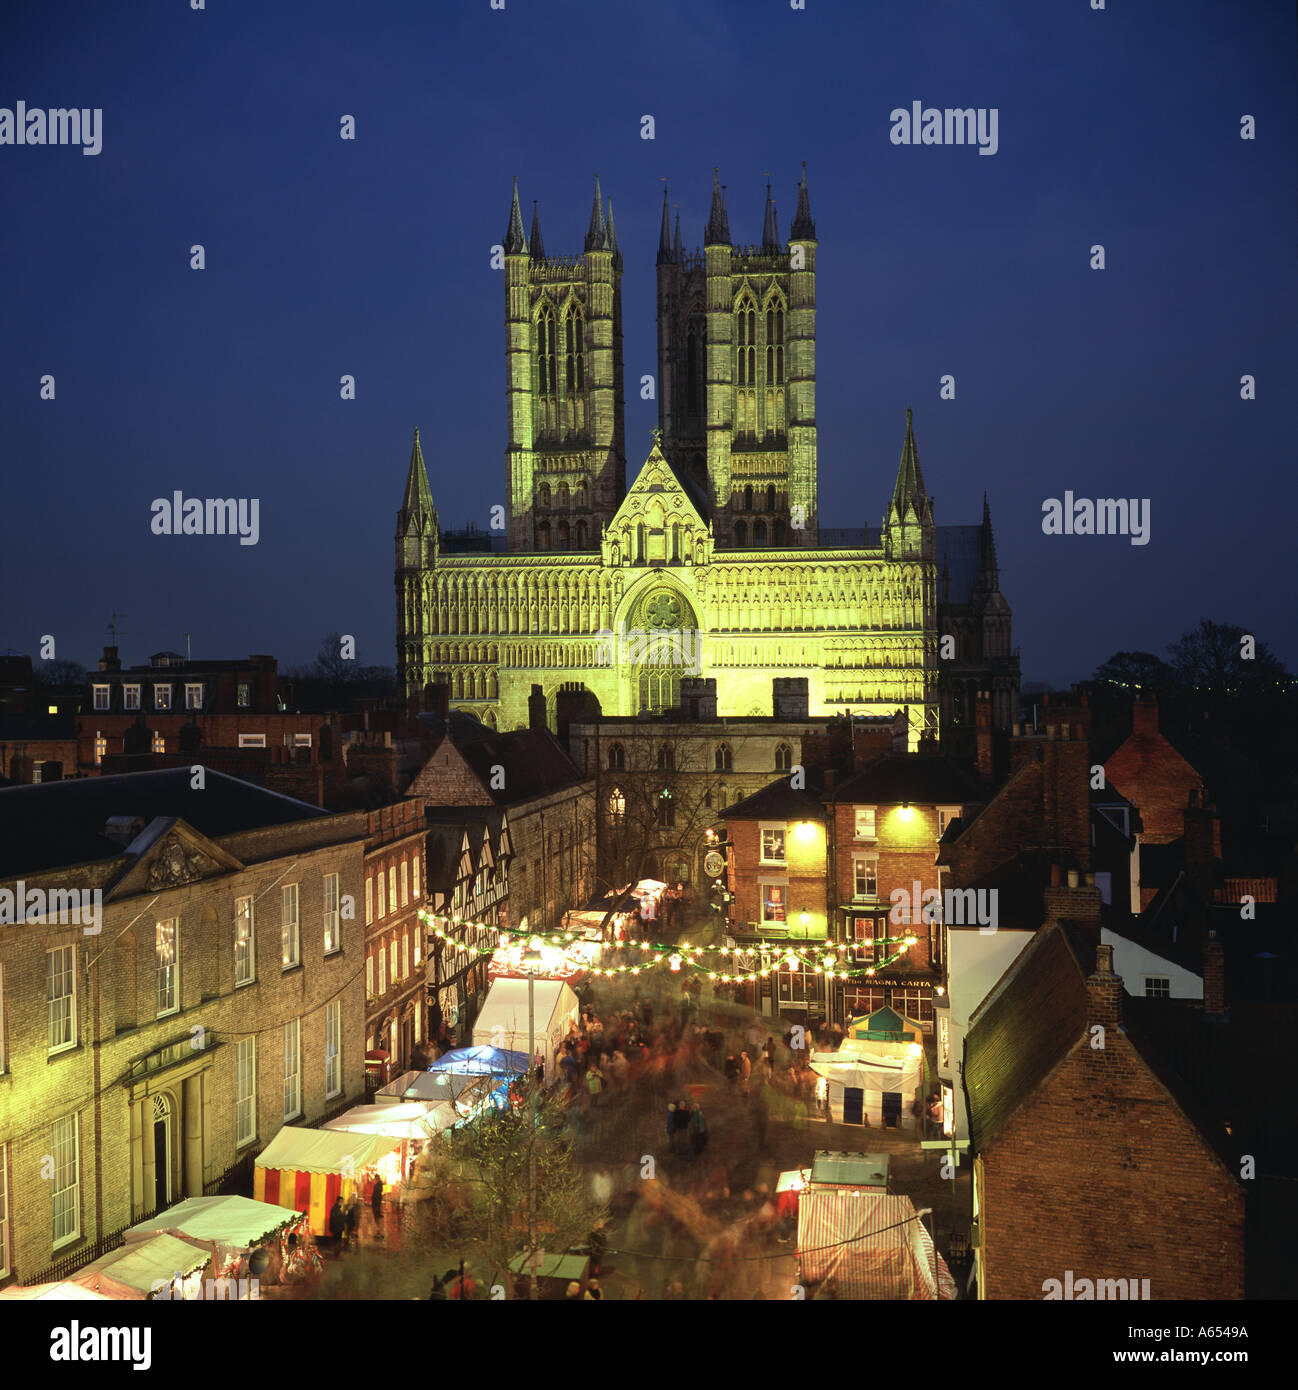 Lincoln Lincolnshire Großbritannien UK Kathedrale traditionelle Weihnachtsmarkt Dämmerung Abenddämmerung nahe Zeit Stockfoto